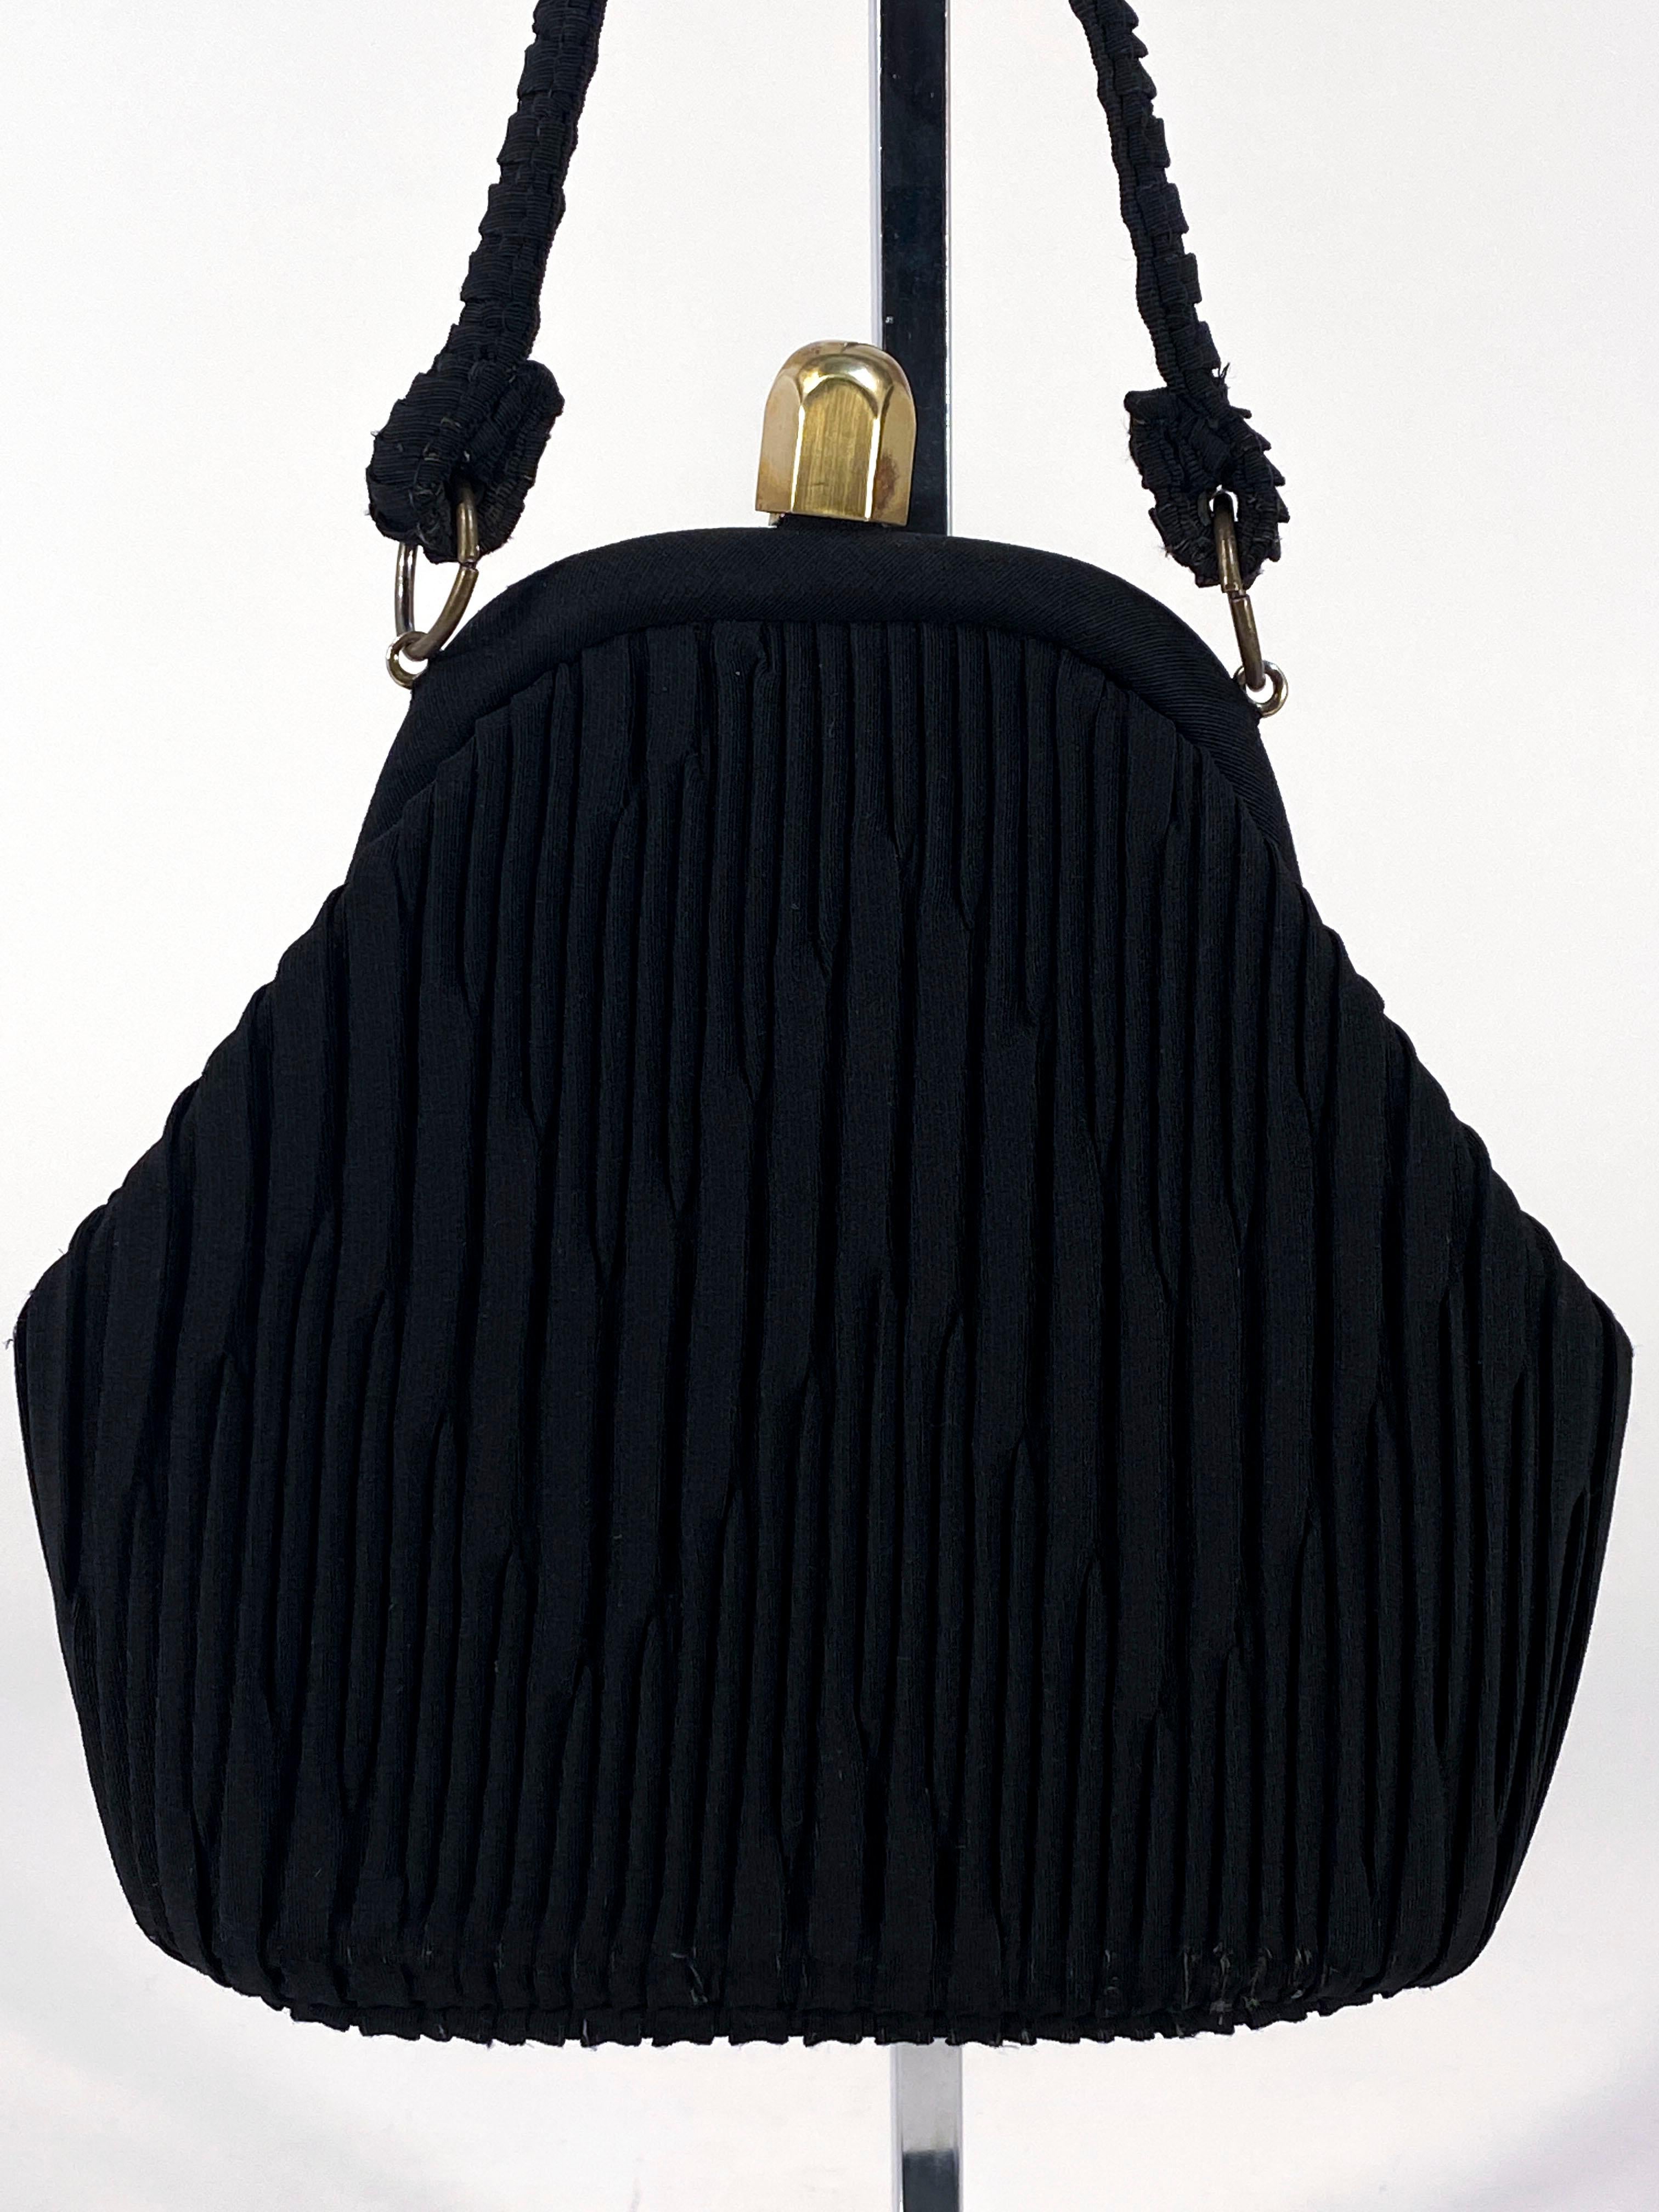 Schwarzer Art-Déco-Rücken aus den 1930er Jahren mit aufwändiger dekorativer Messerfaltung im Zickzack-Muster auf beiden Seiten der Tasche. Der Griff hat passende Falten und der Innenrahmen/Verschluss ist aus Messing. Das Innere ist in zartem Rosa